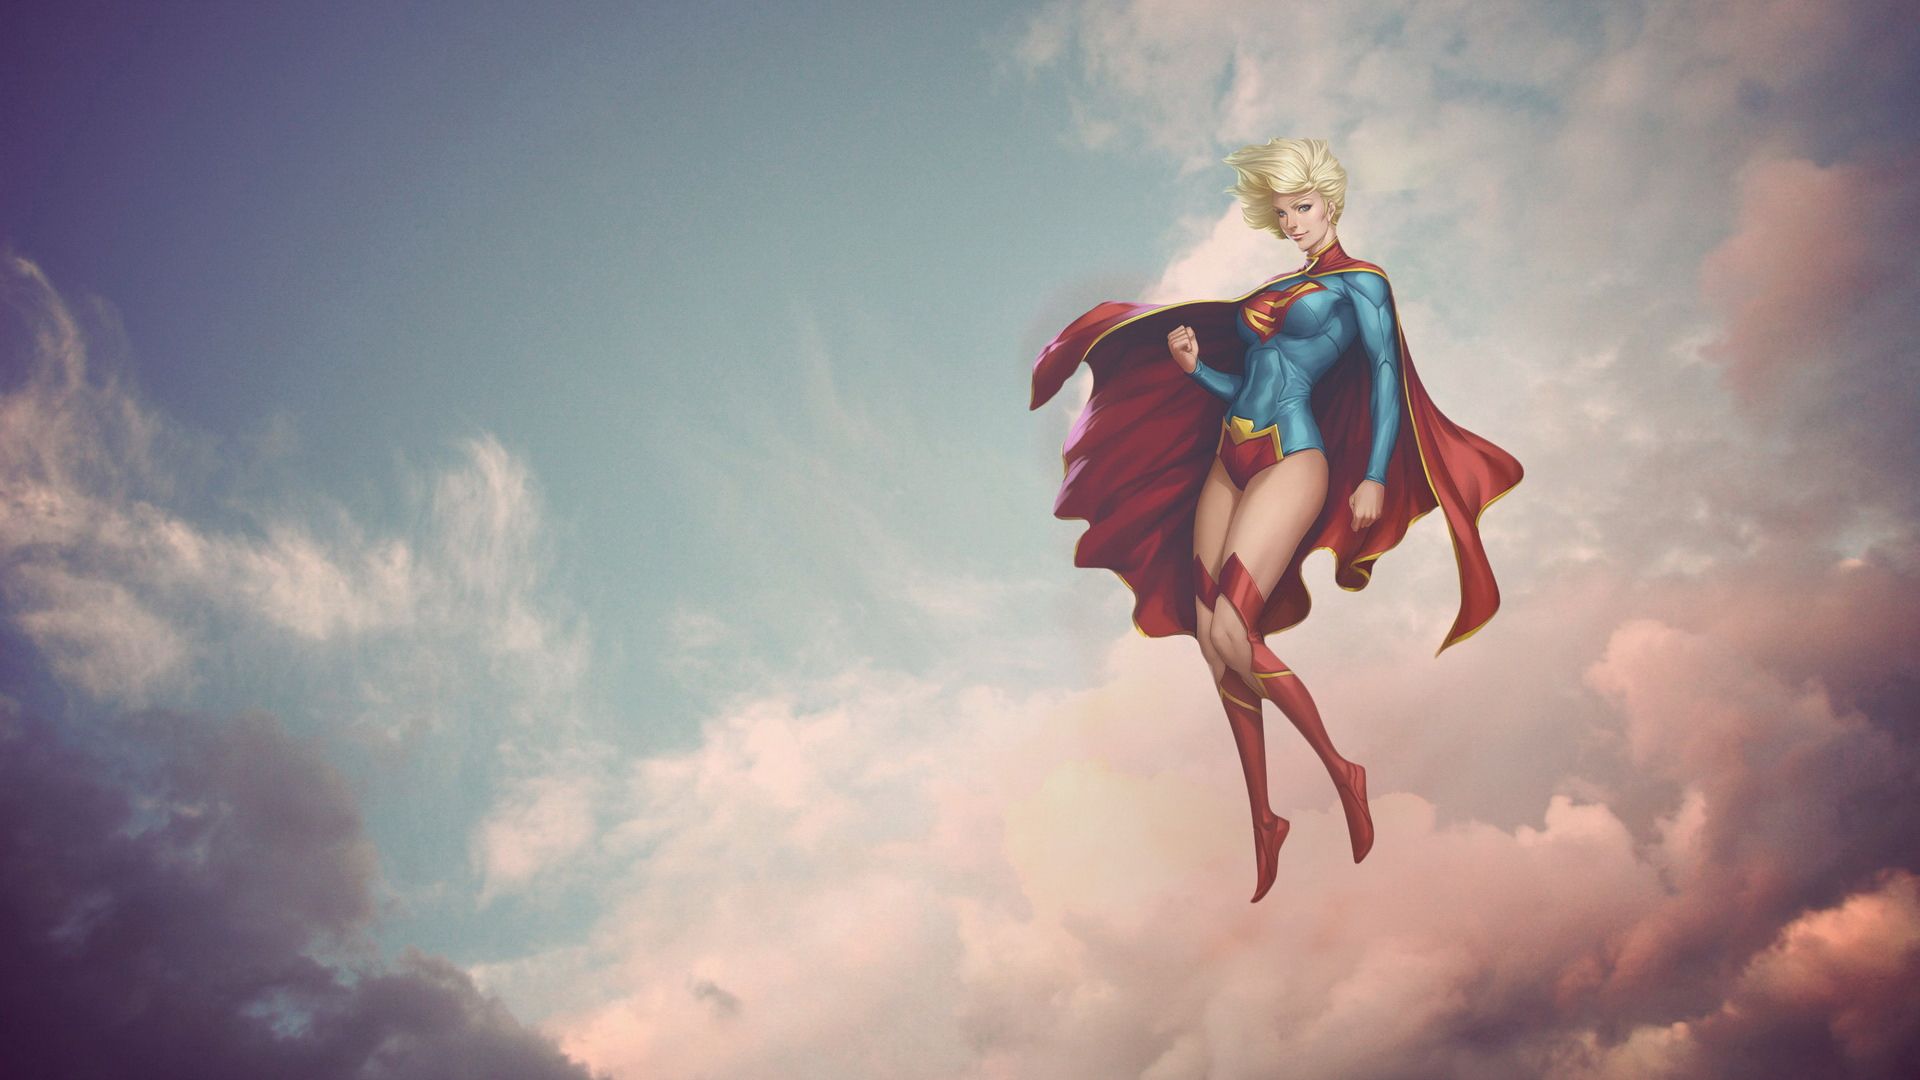 #cape, #clouds, #blonde, #Supergirl, #superhero, #sky